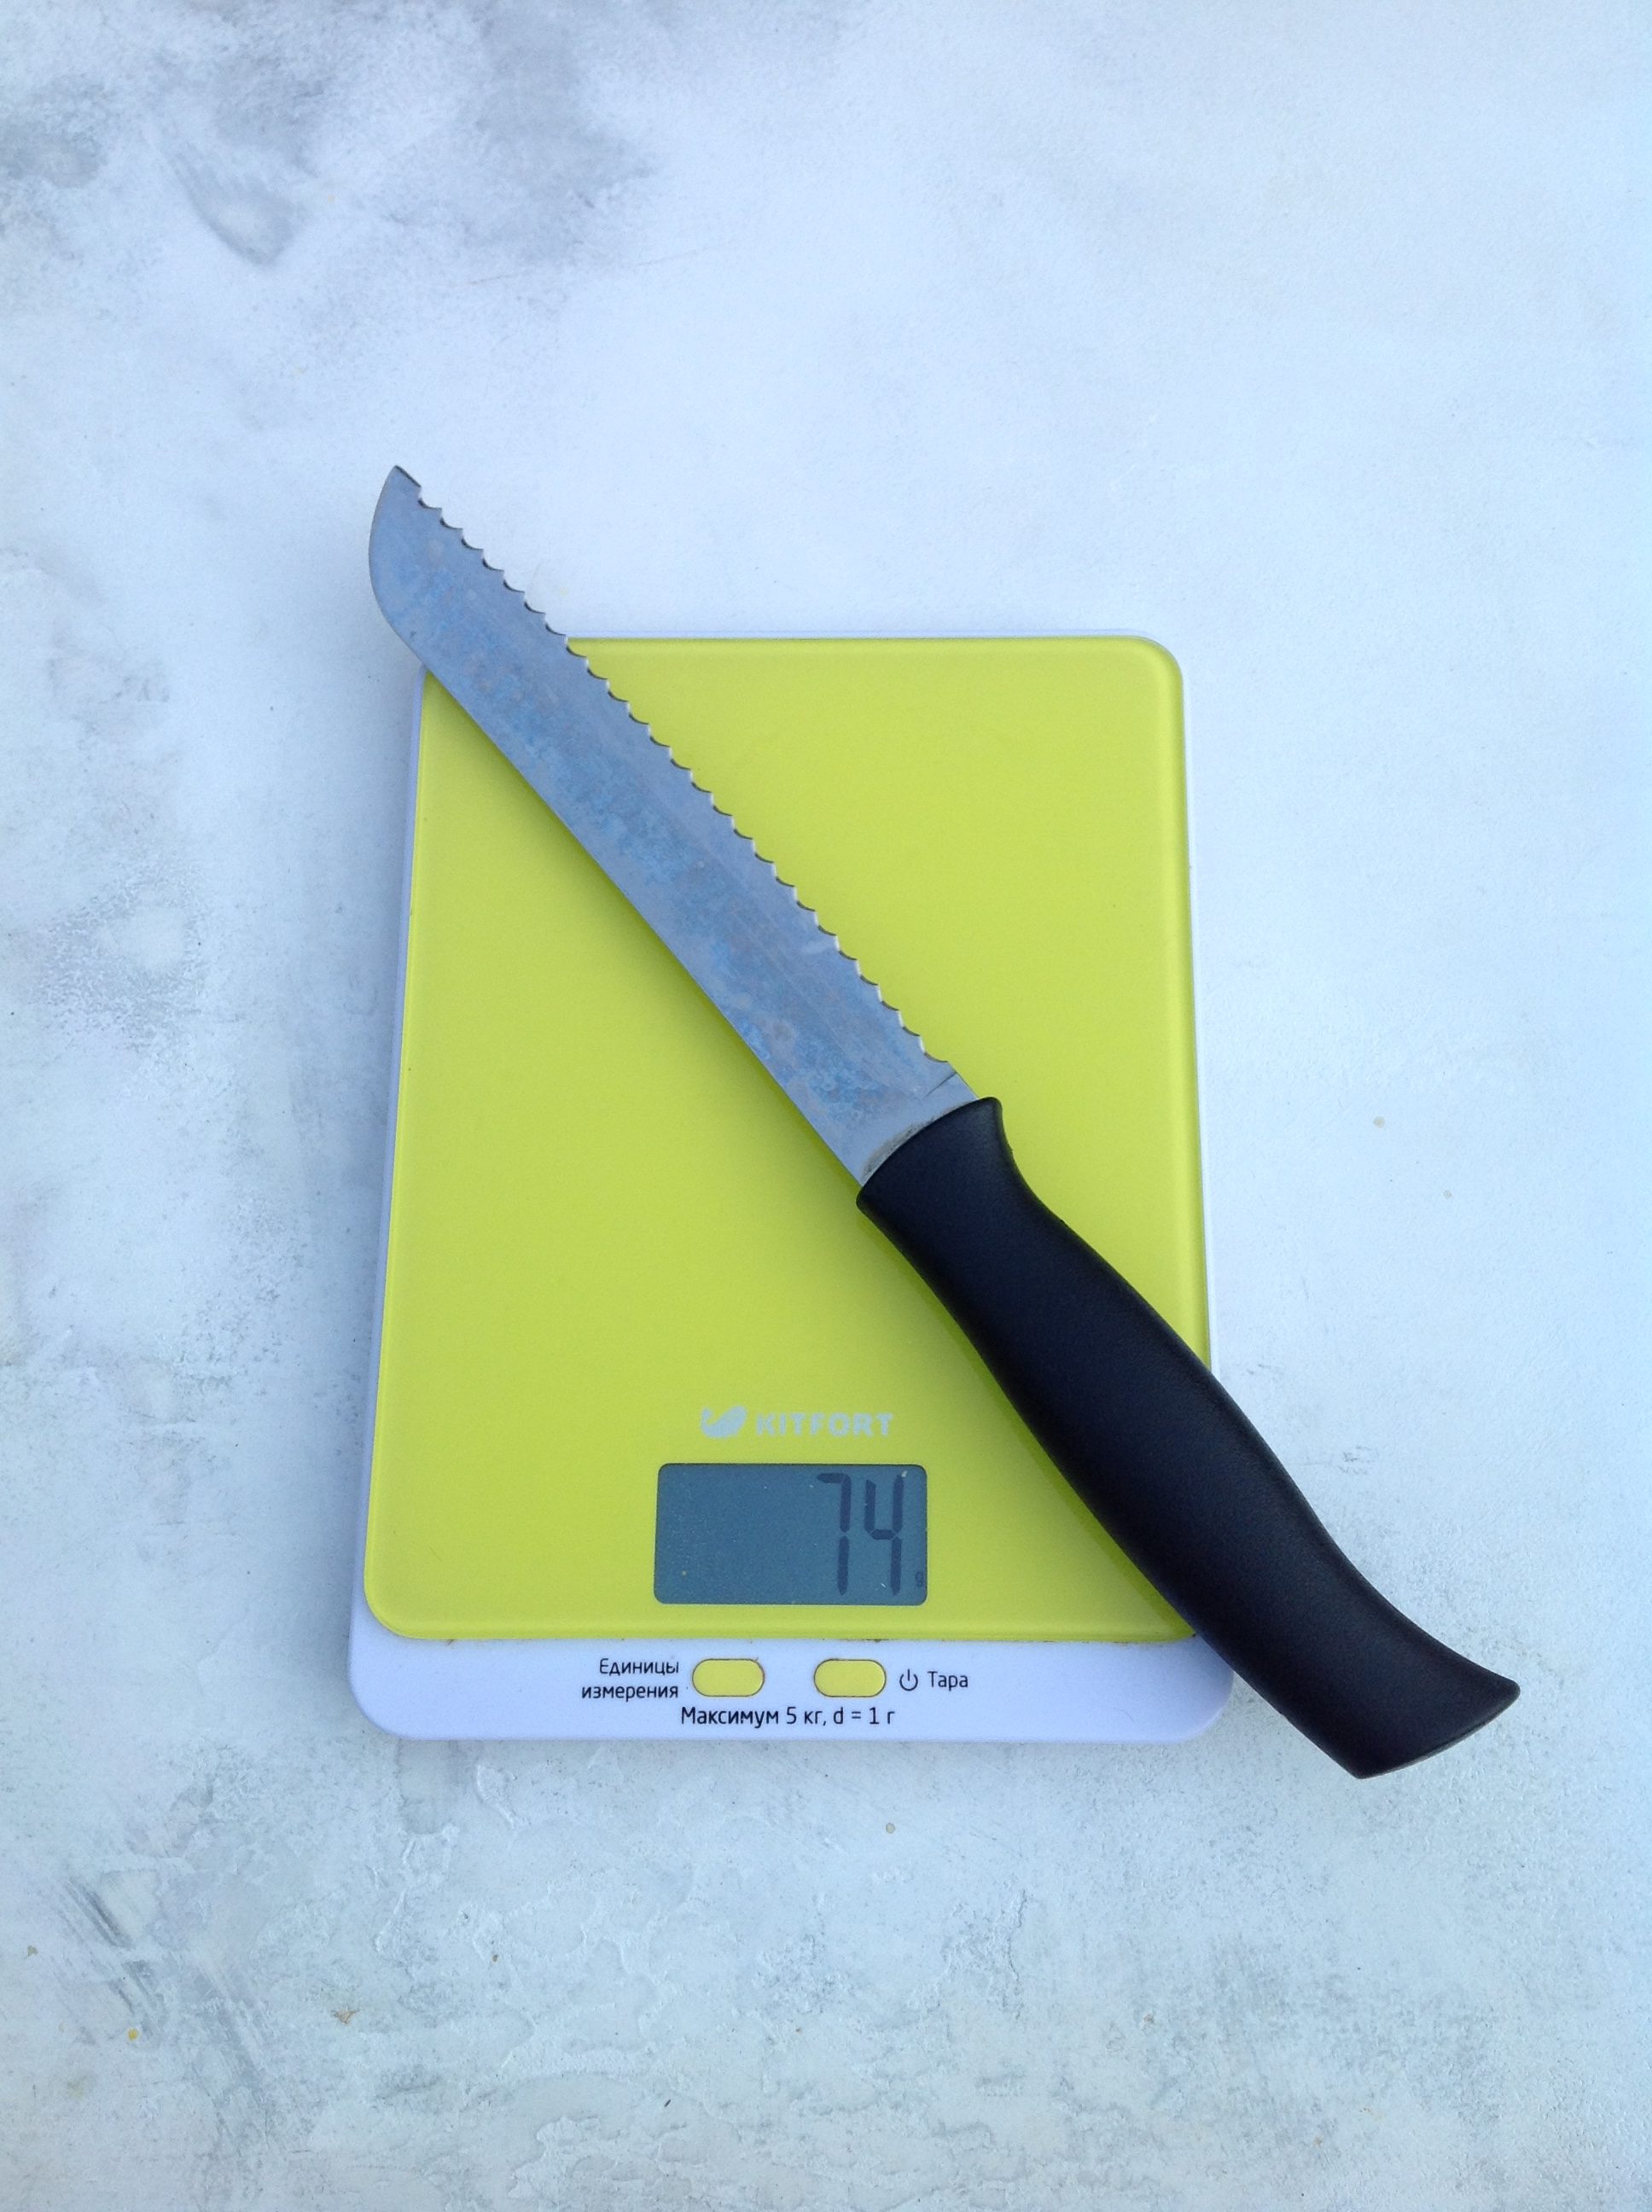 вес ножа для хлеба